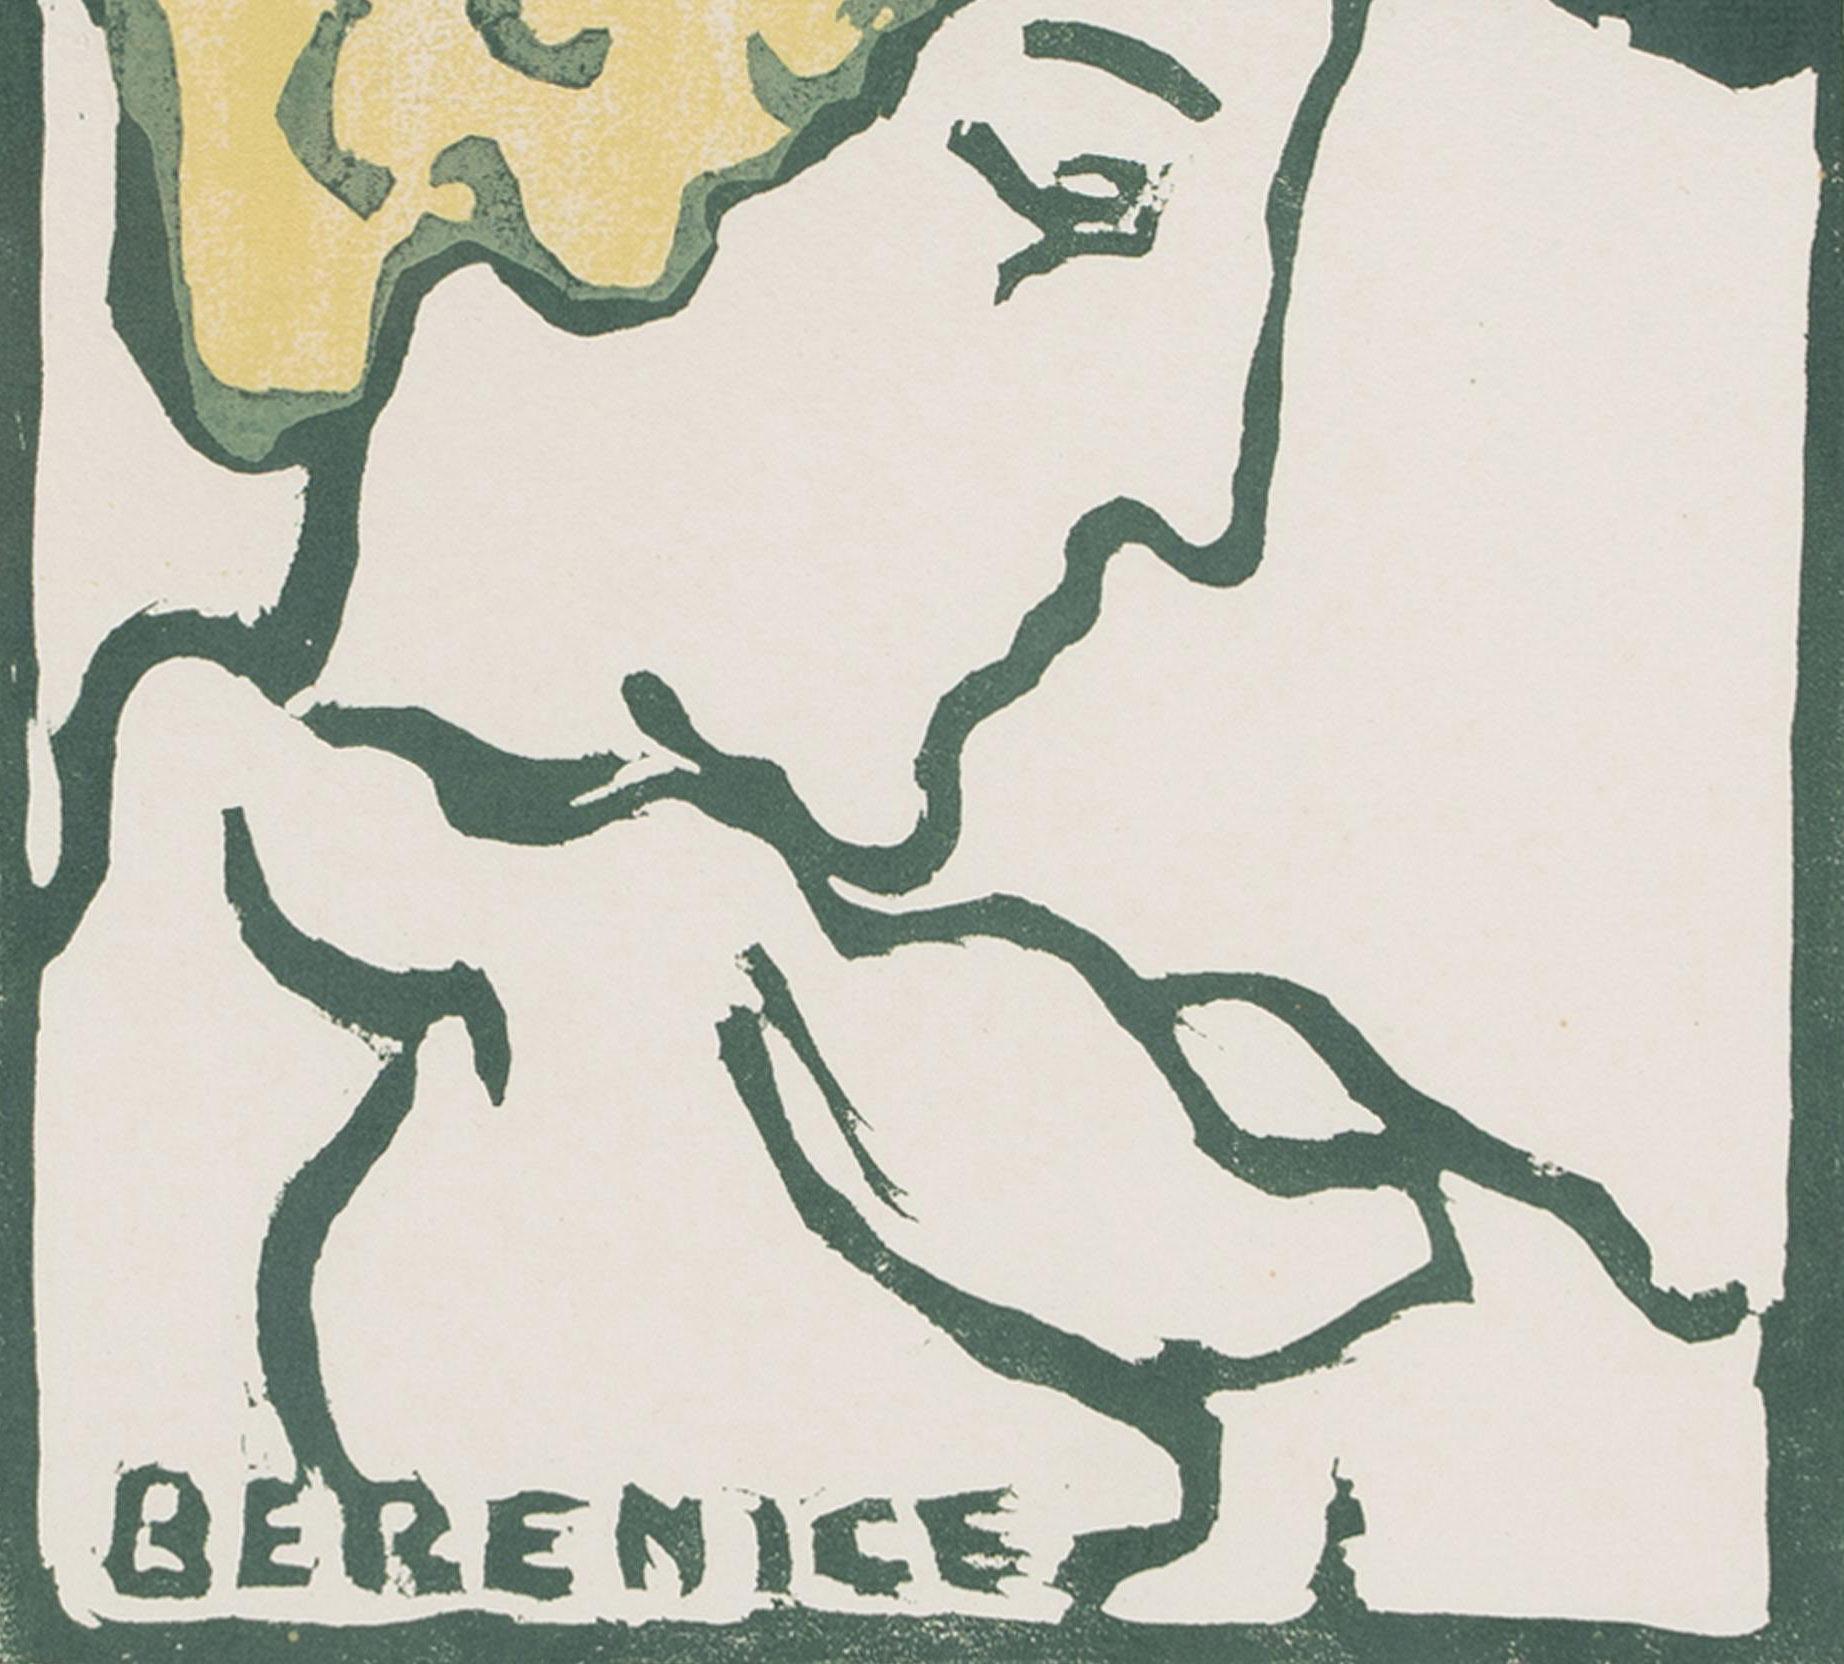 Berenice
Farbholzschnitt, 1900-1910
Signiert mit dem roten Tintenstempel des Künstlers (siehe Foto)
Auflage: 50 (46/50)
Signiert mit den roten Tinteninitialen des Künstlers, Lugt 1771, Sup.
Zustand: Ausgezeichnet
Bild/Blockgröße: 11 5/8 x 8 1/4